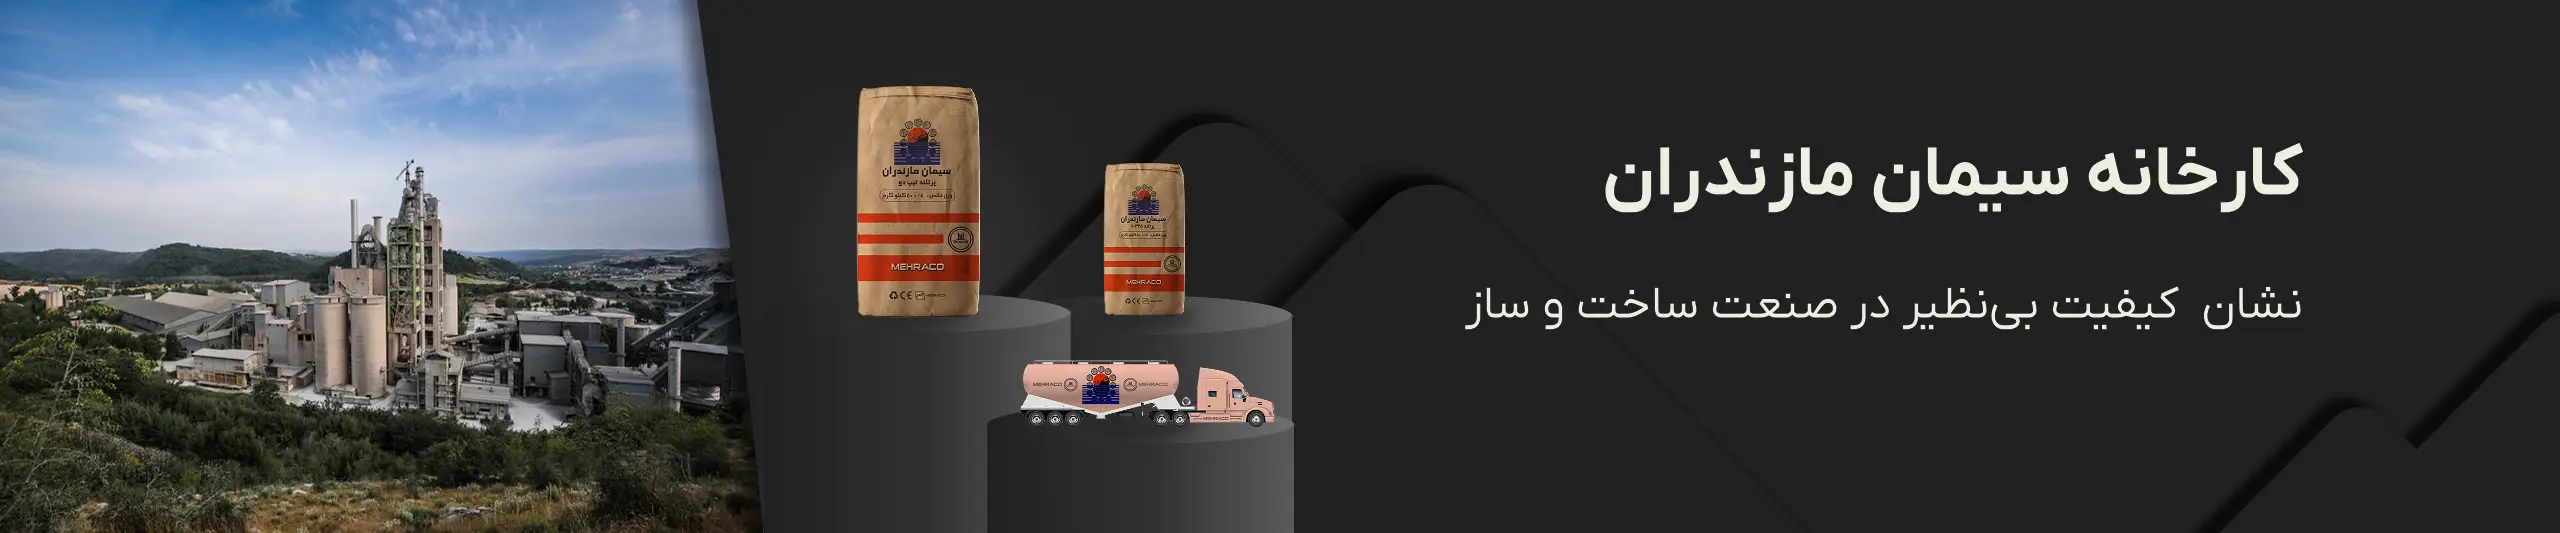 سیمان مازندران - تبلیغات